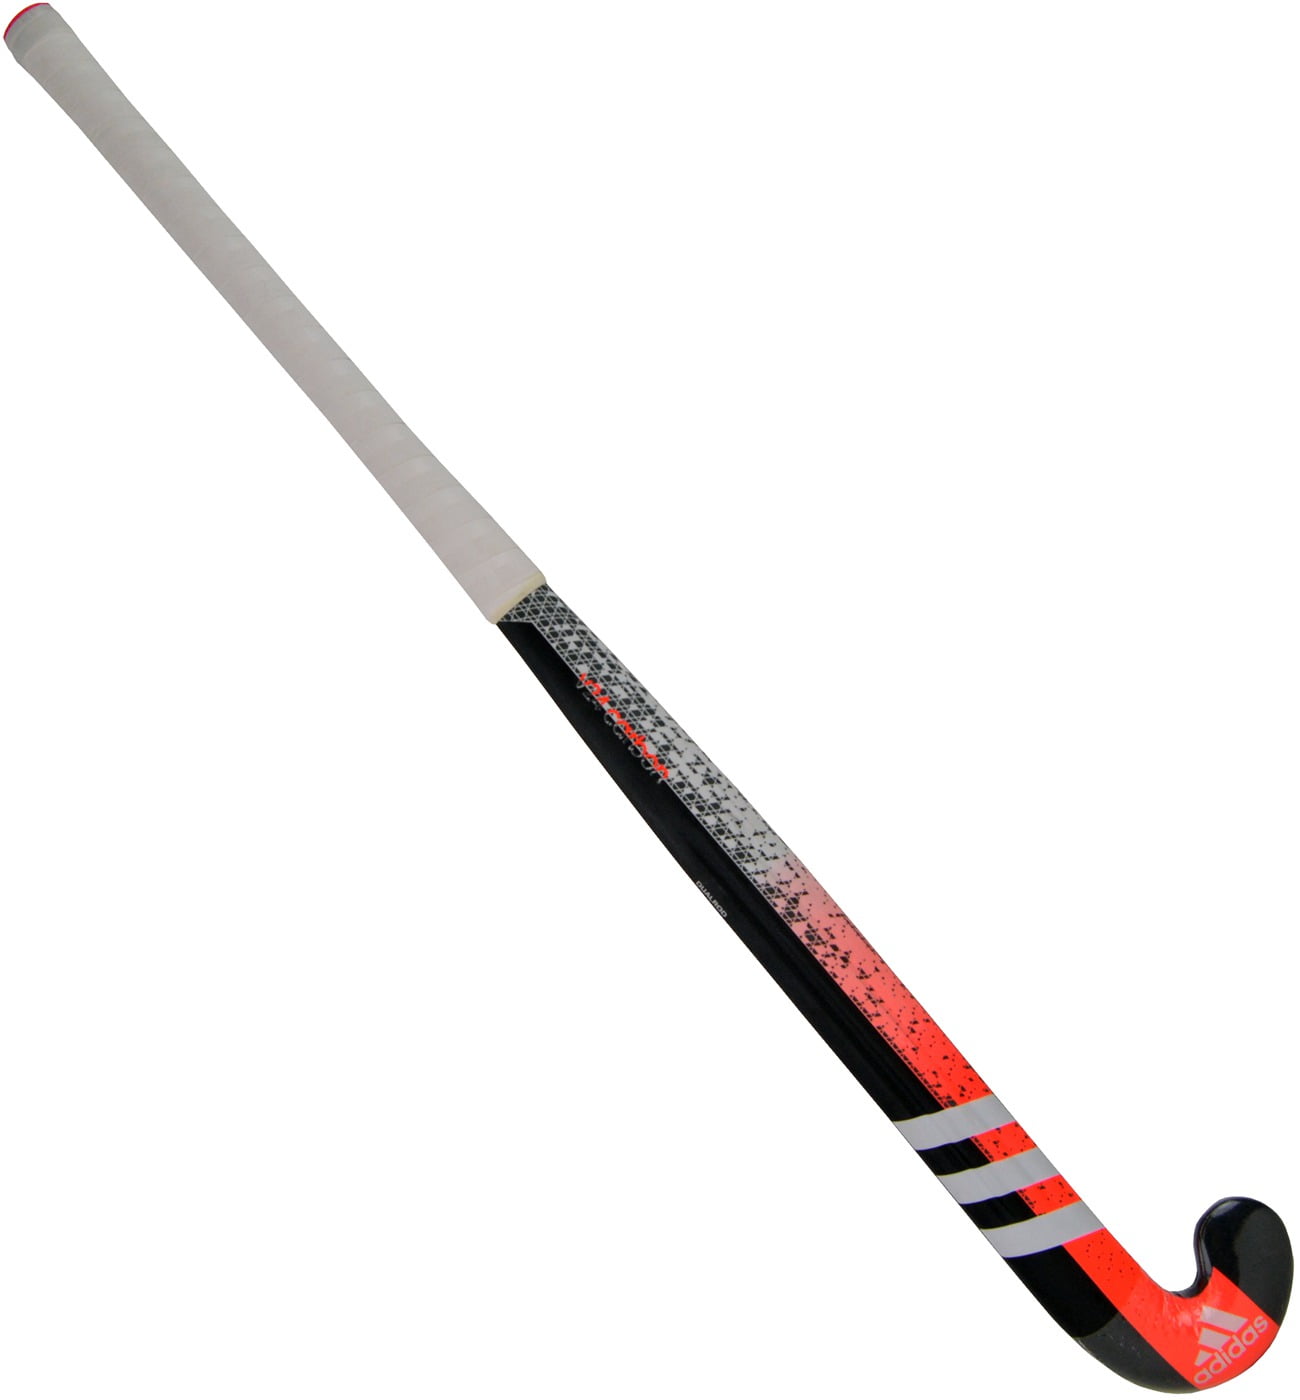 Adidas V24 90% Carbon Field Hockey Stick - Walmart.com - Walmart.com